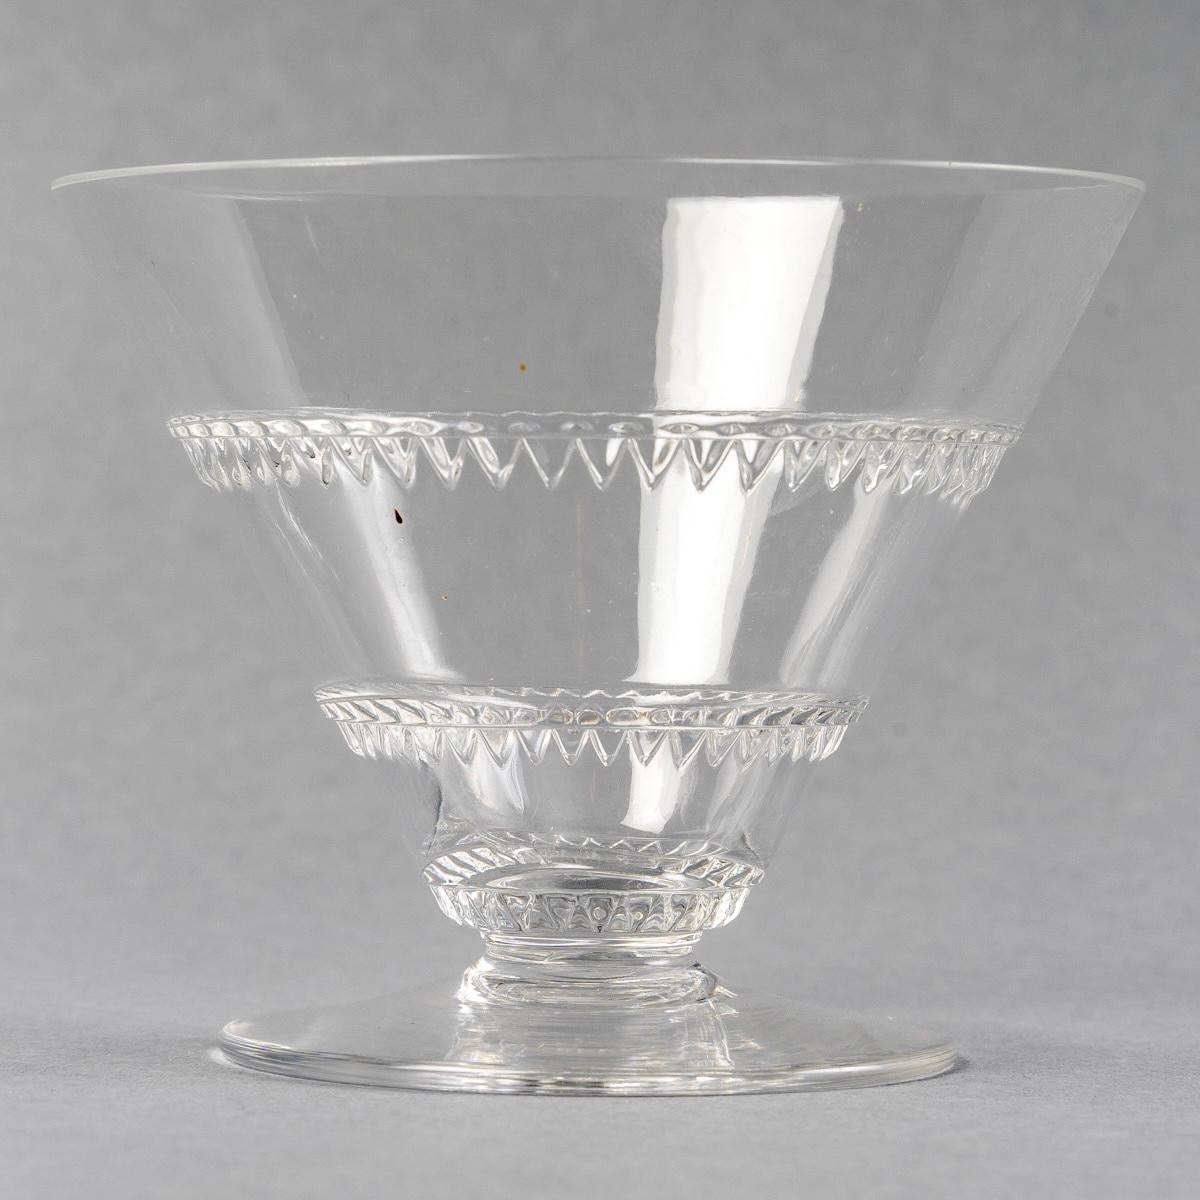 1932 René Lalique Set of Glasses Decanter Pitcher Vouvray Clear Glass 42 Pieces 5